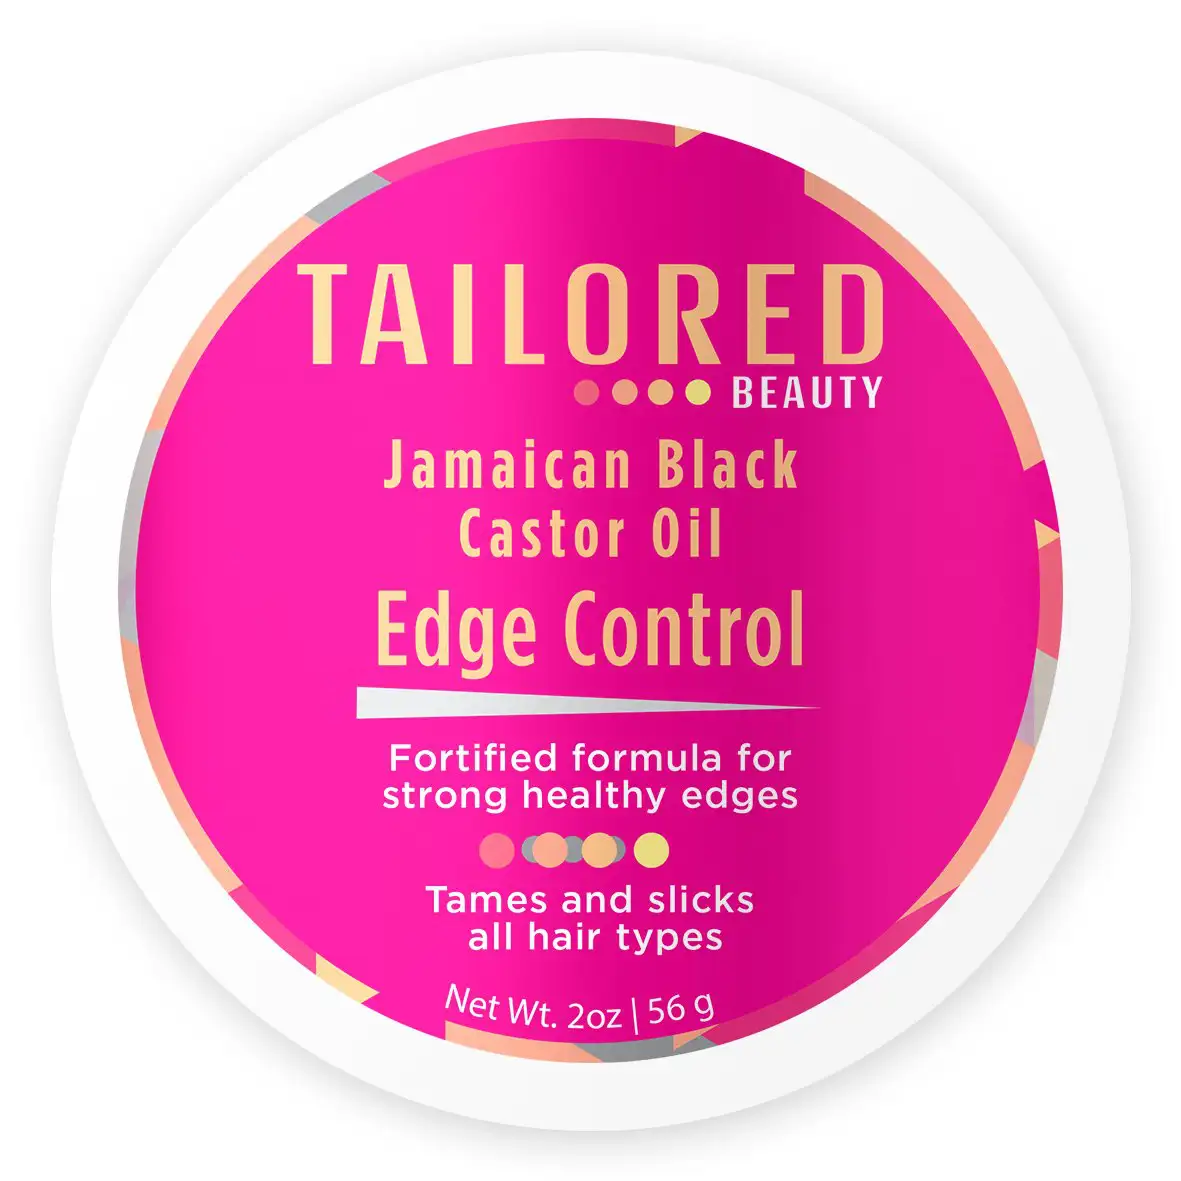 Tailored beauty huile de ricin noire jamaicaine edge control 2 oz_1673. DIAYTAR SENEGAL - Votre Destination pour un Shopping Inoubliable. Naviguez à travers notre catalogue et choisissez des produits qui vous marquent par leur originalité.